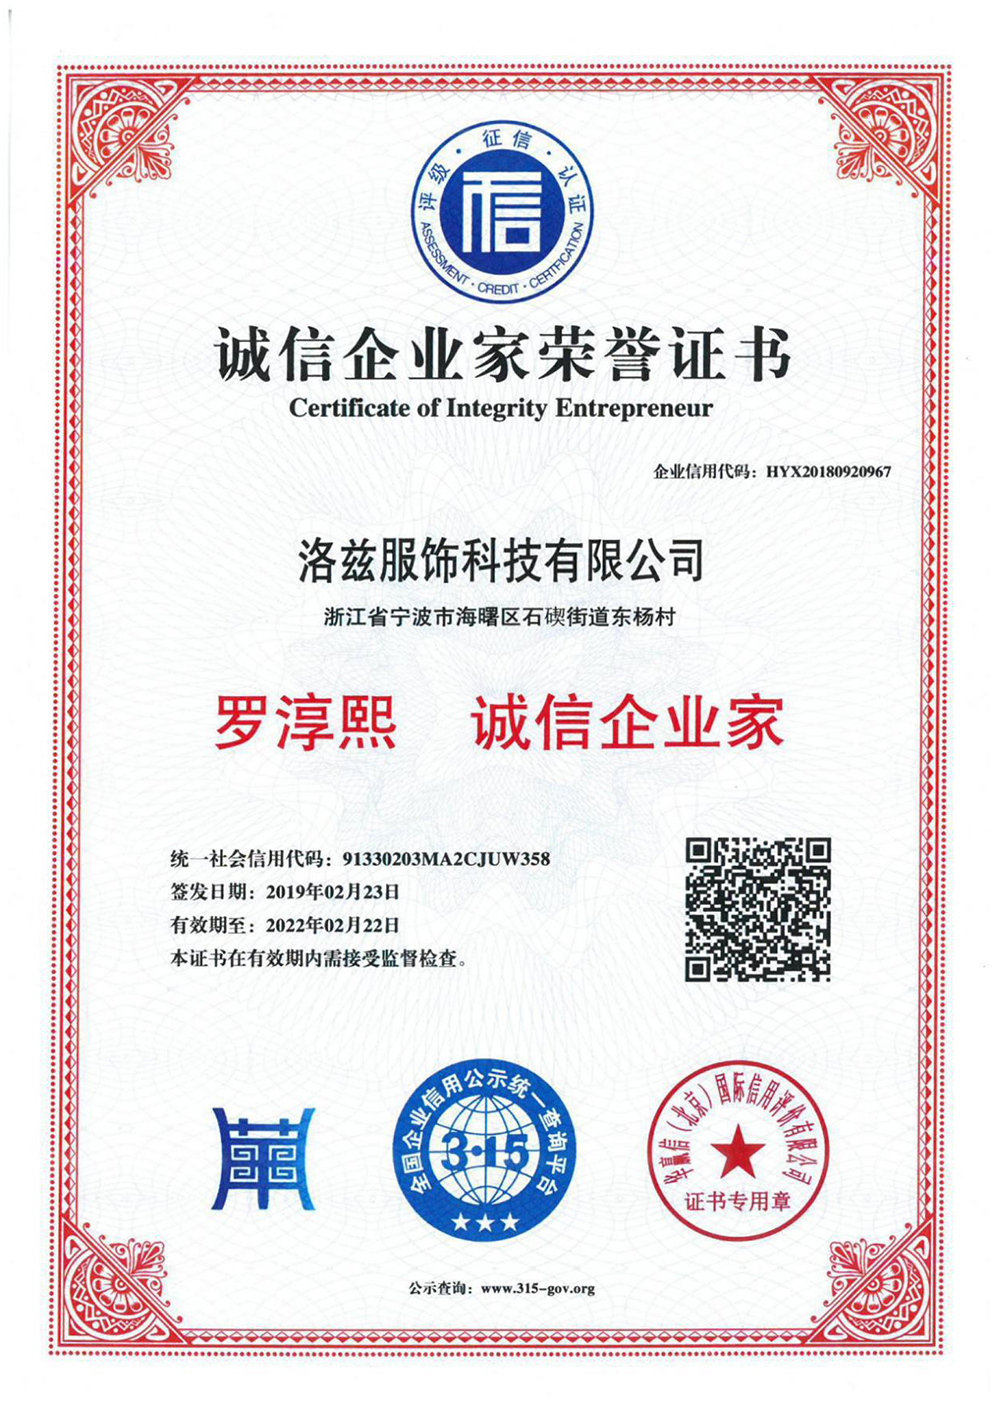 Credit entrepreneur certificate